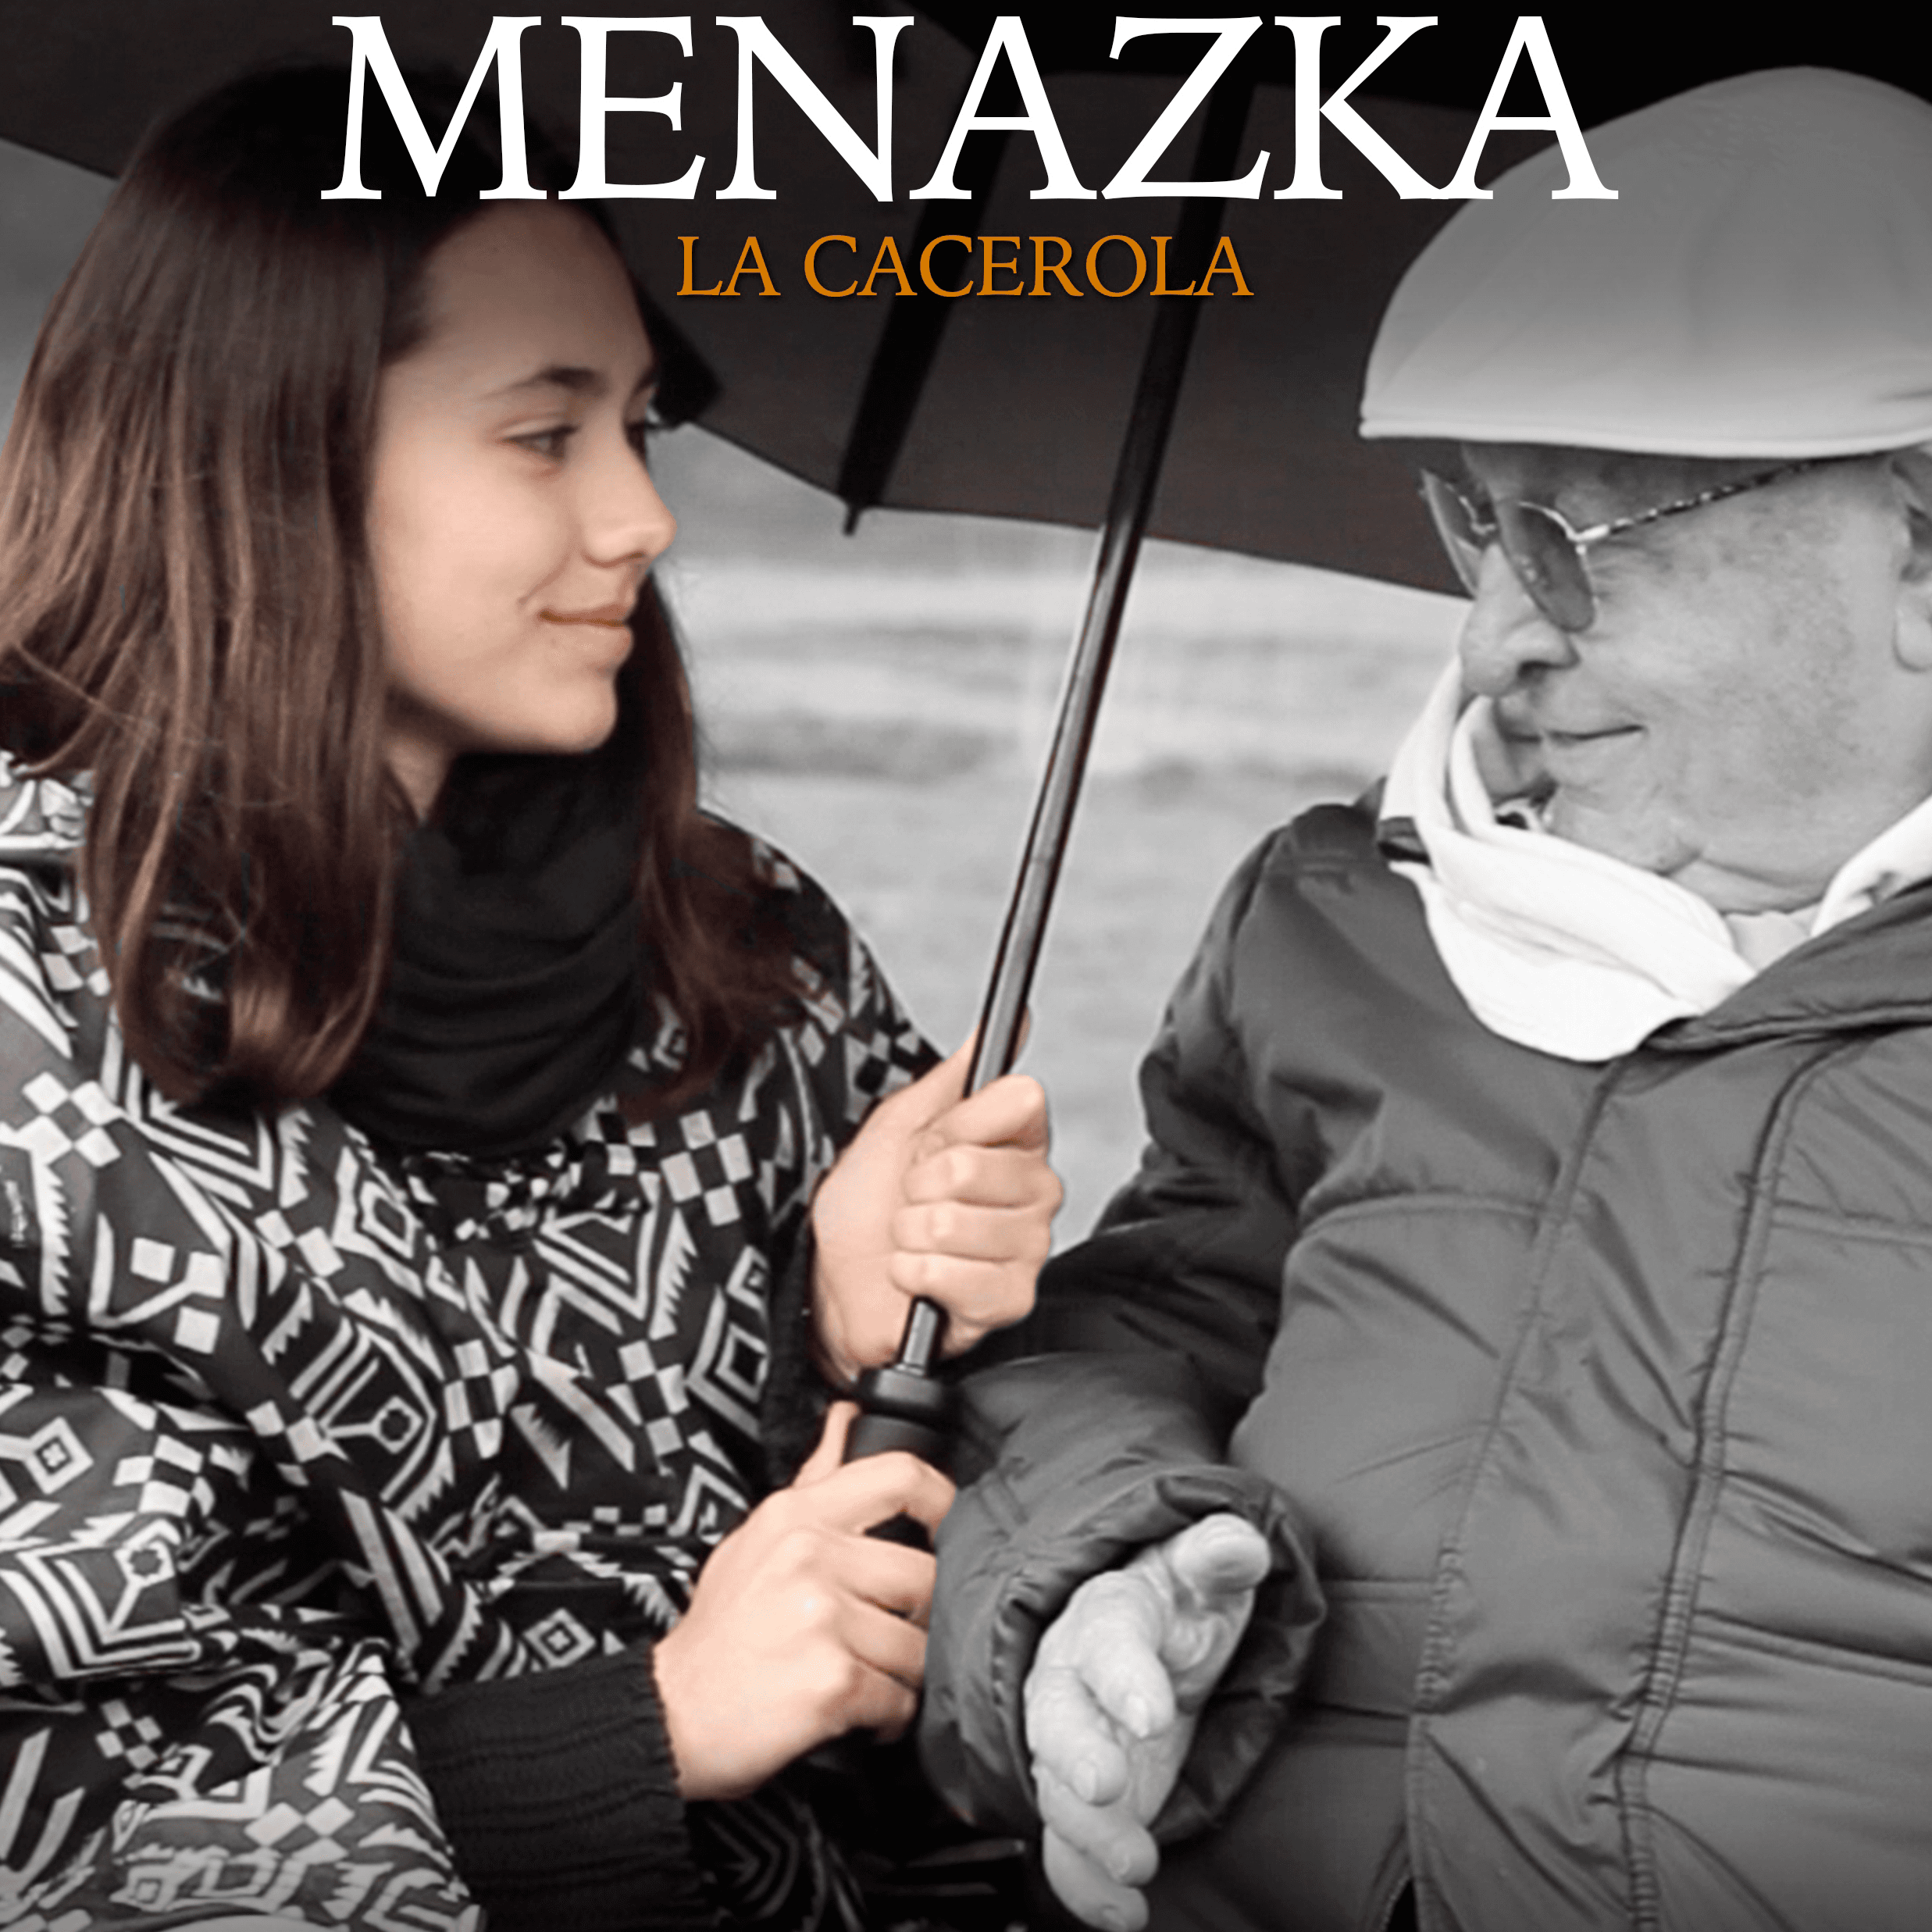 Premiere of the Documentary «Menazka (The casserole)» of Professor David Serrano